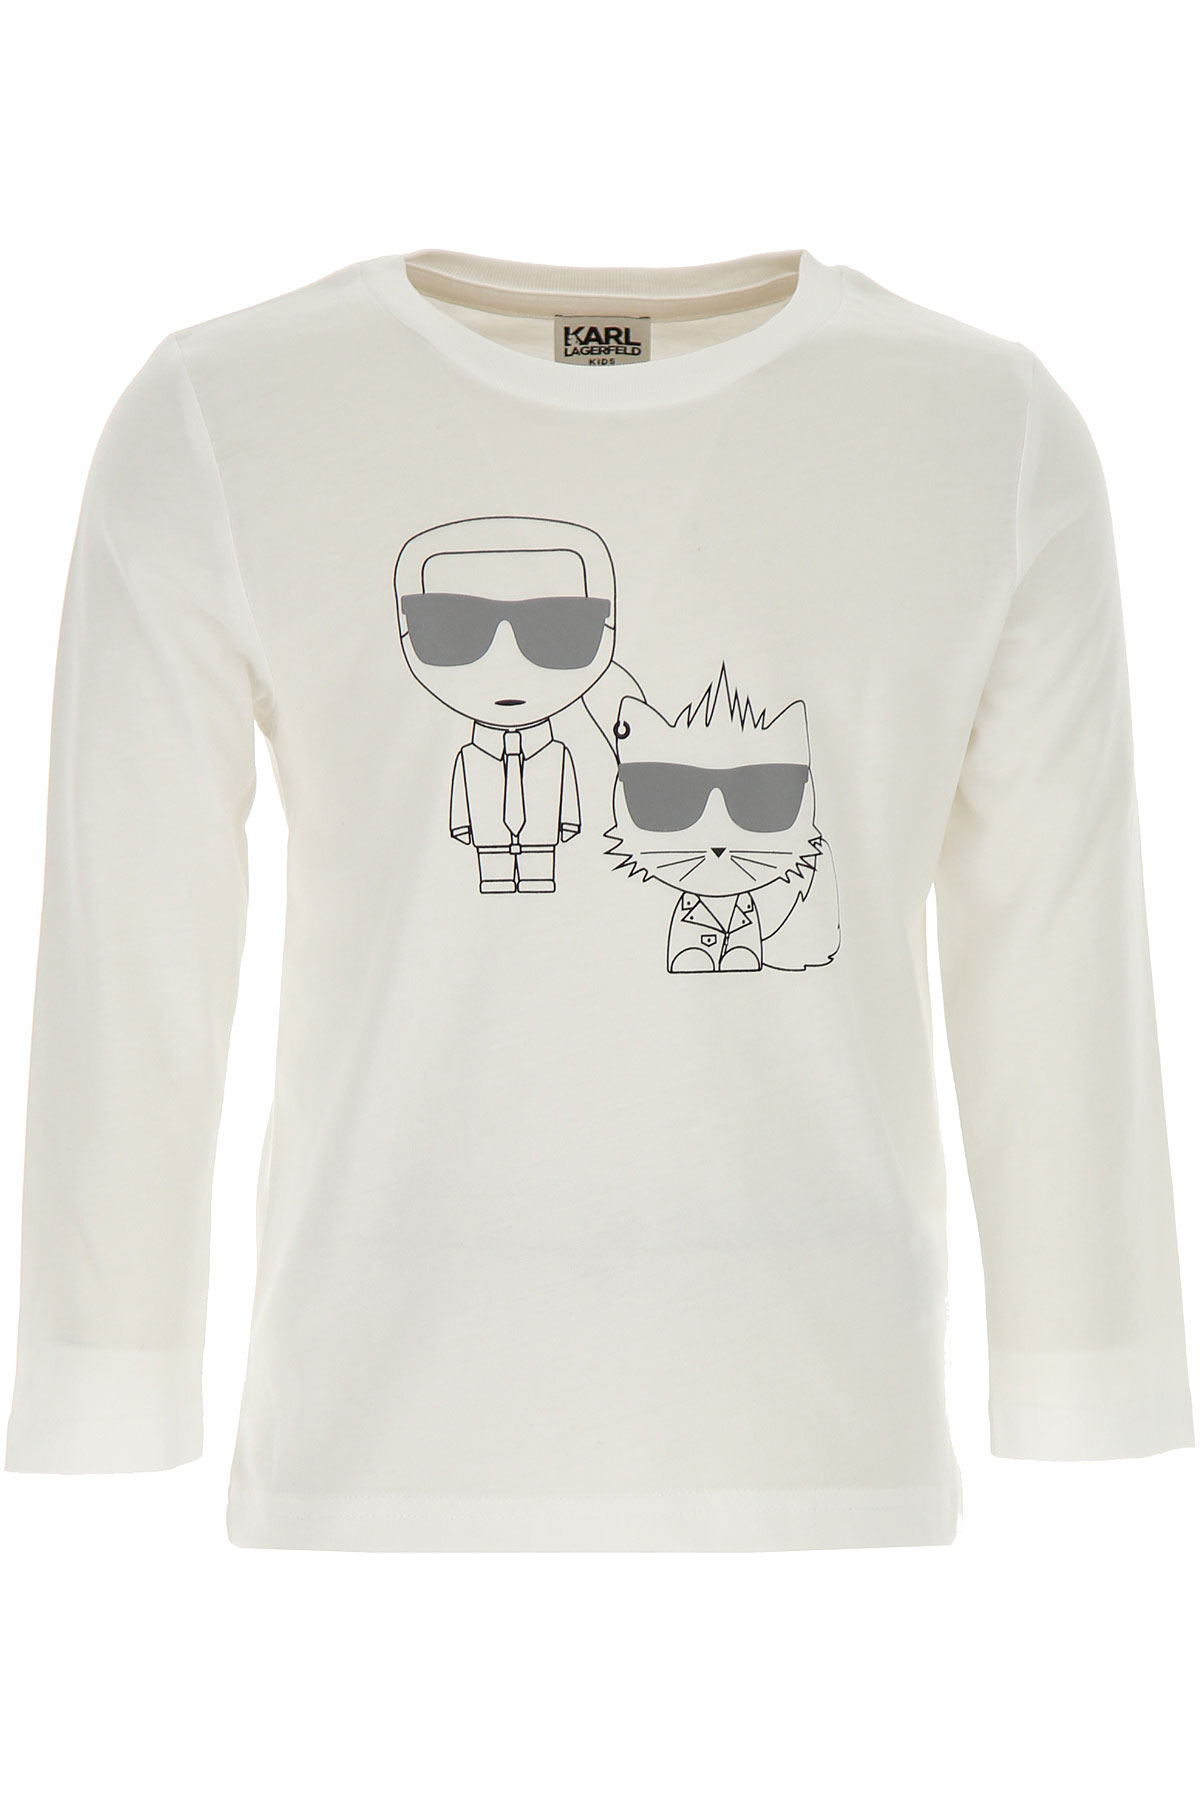 Karl Lagerfeld Kinder T-Shirt für Jungen Günstig im Sale, Weiss, Baumwolle, 2017, 10Y 12Y 14Y 6Y